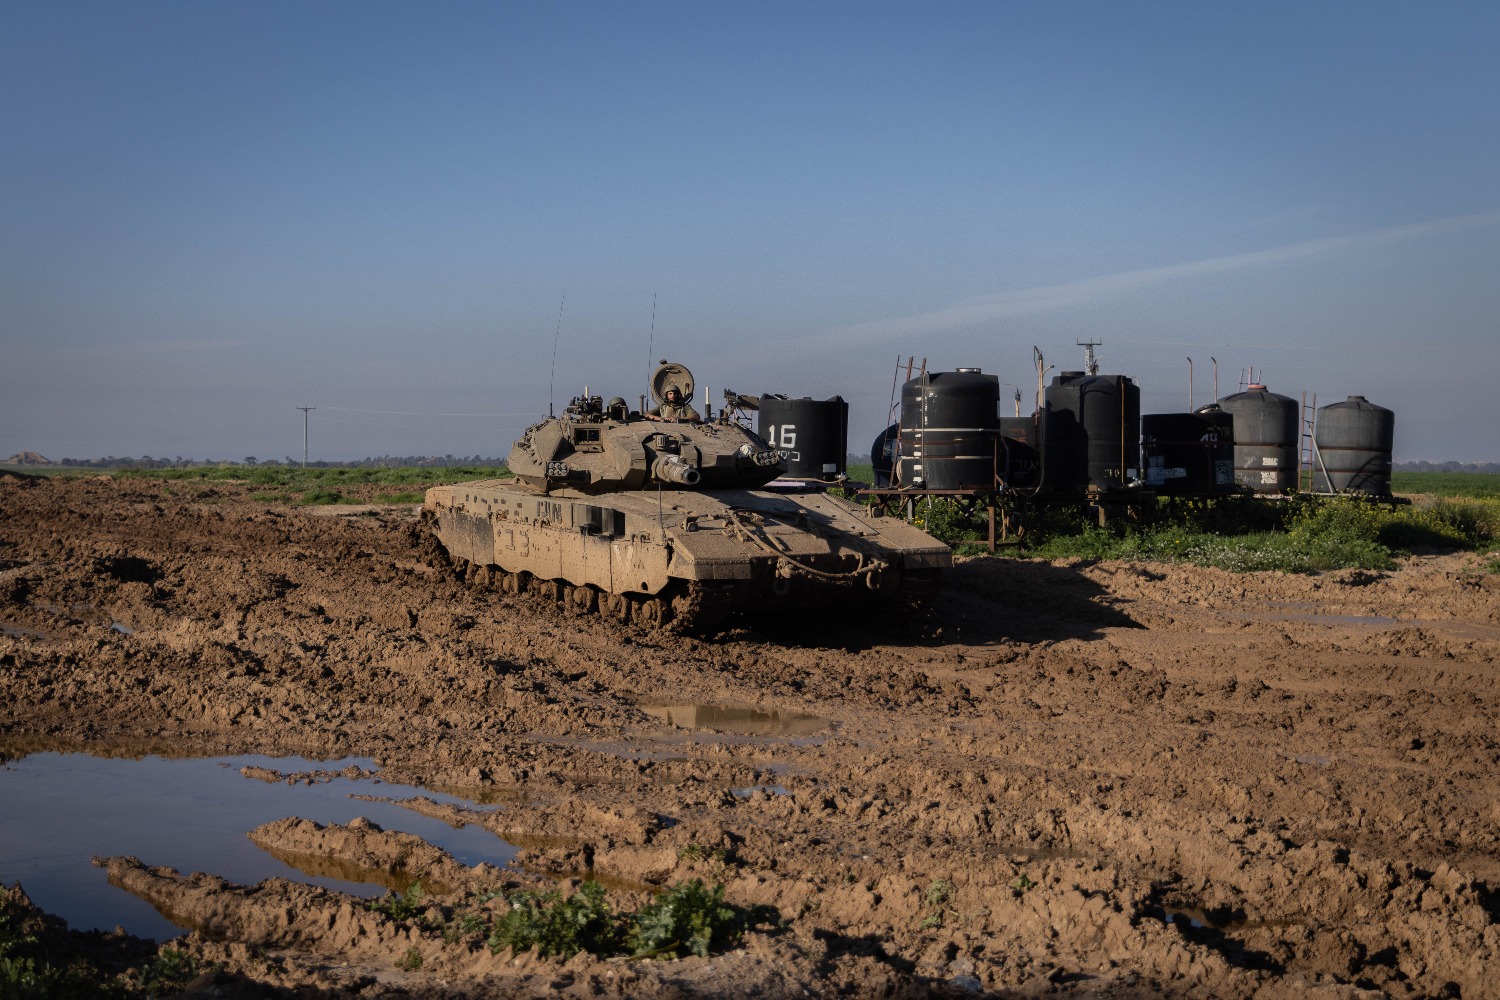  Два солдата спецназа «Маглан» погибли на юге Сектора Газа 